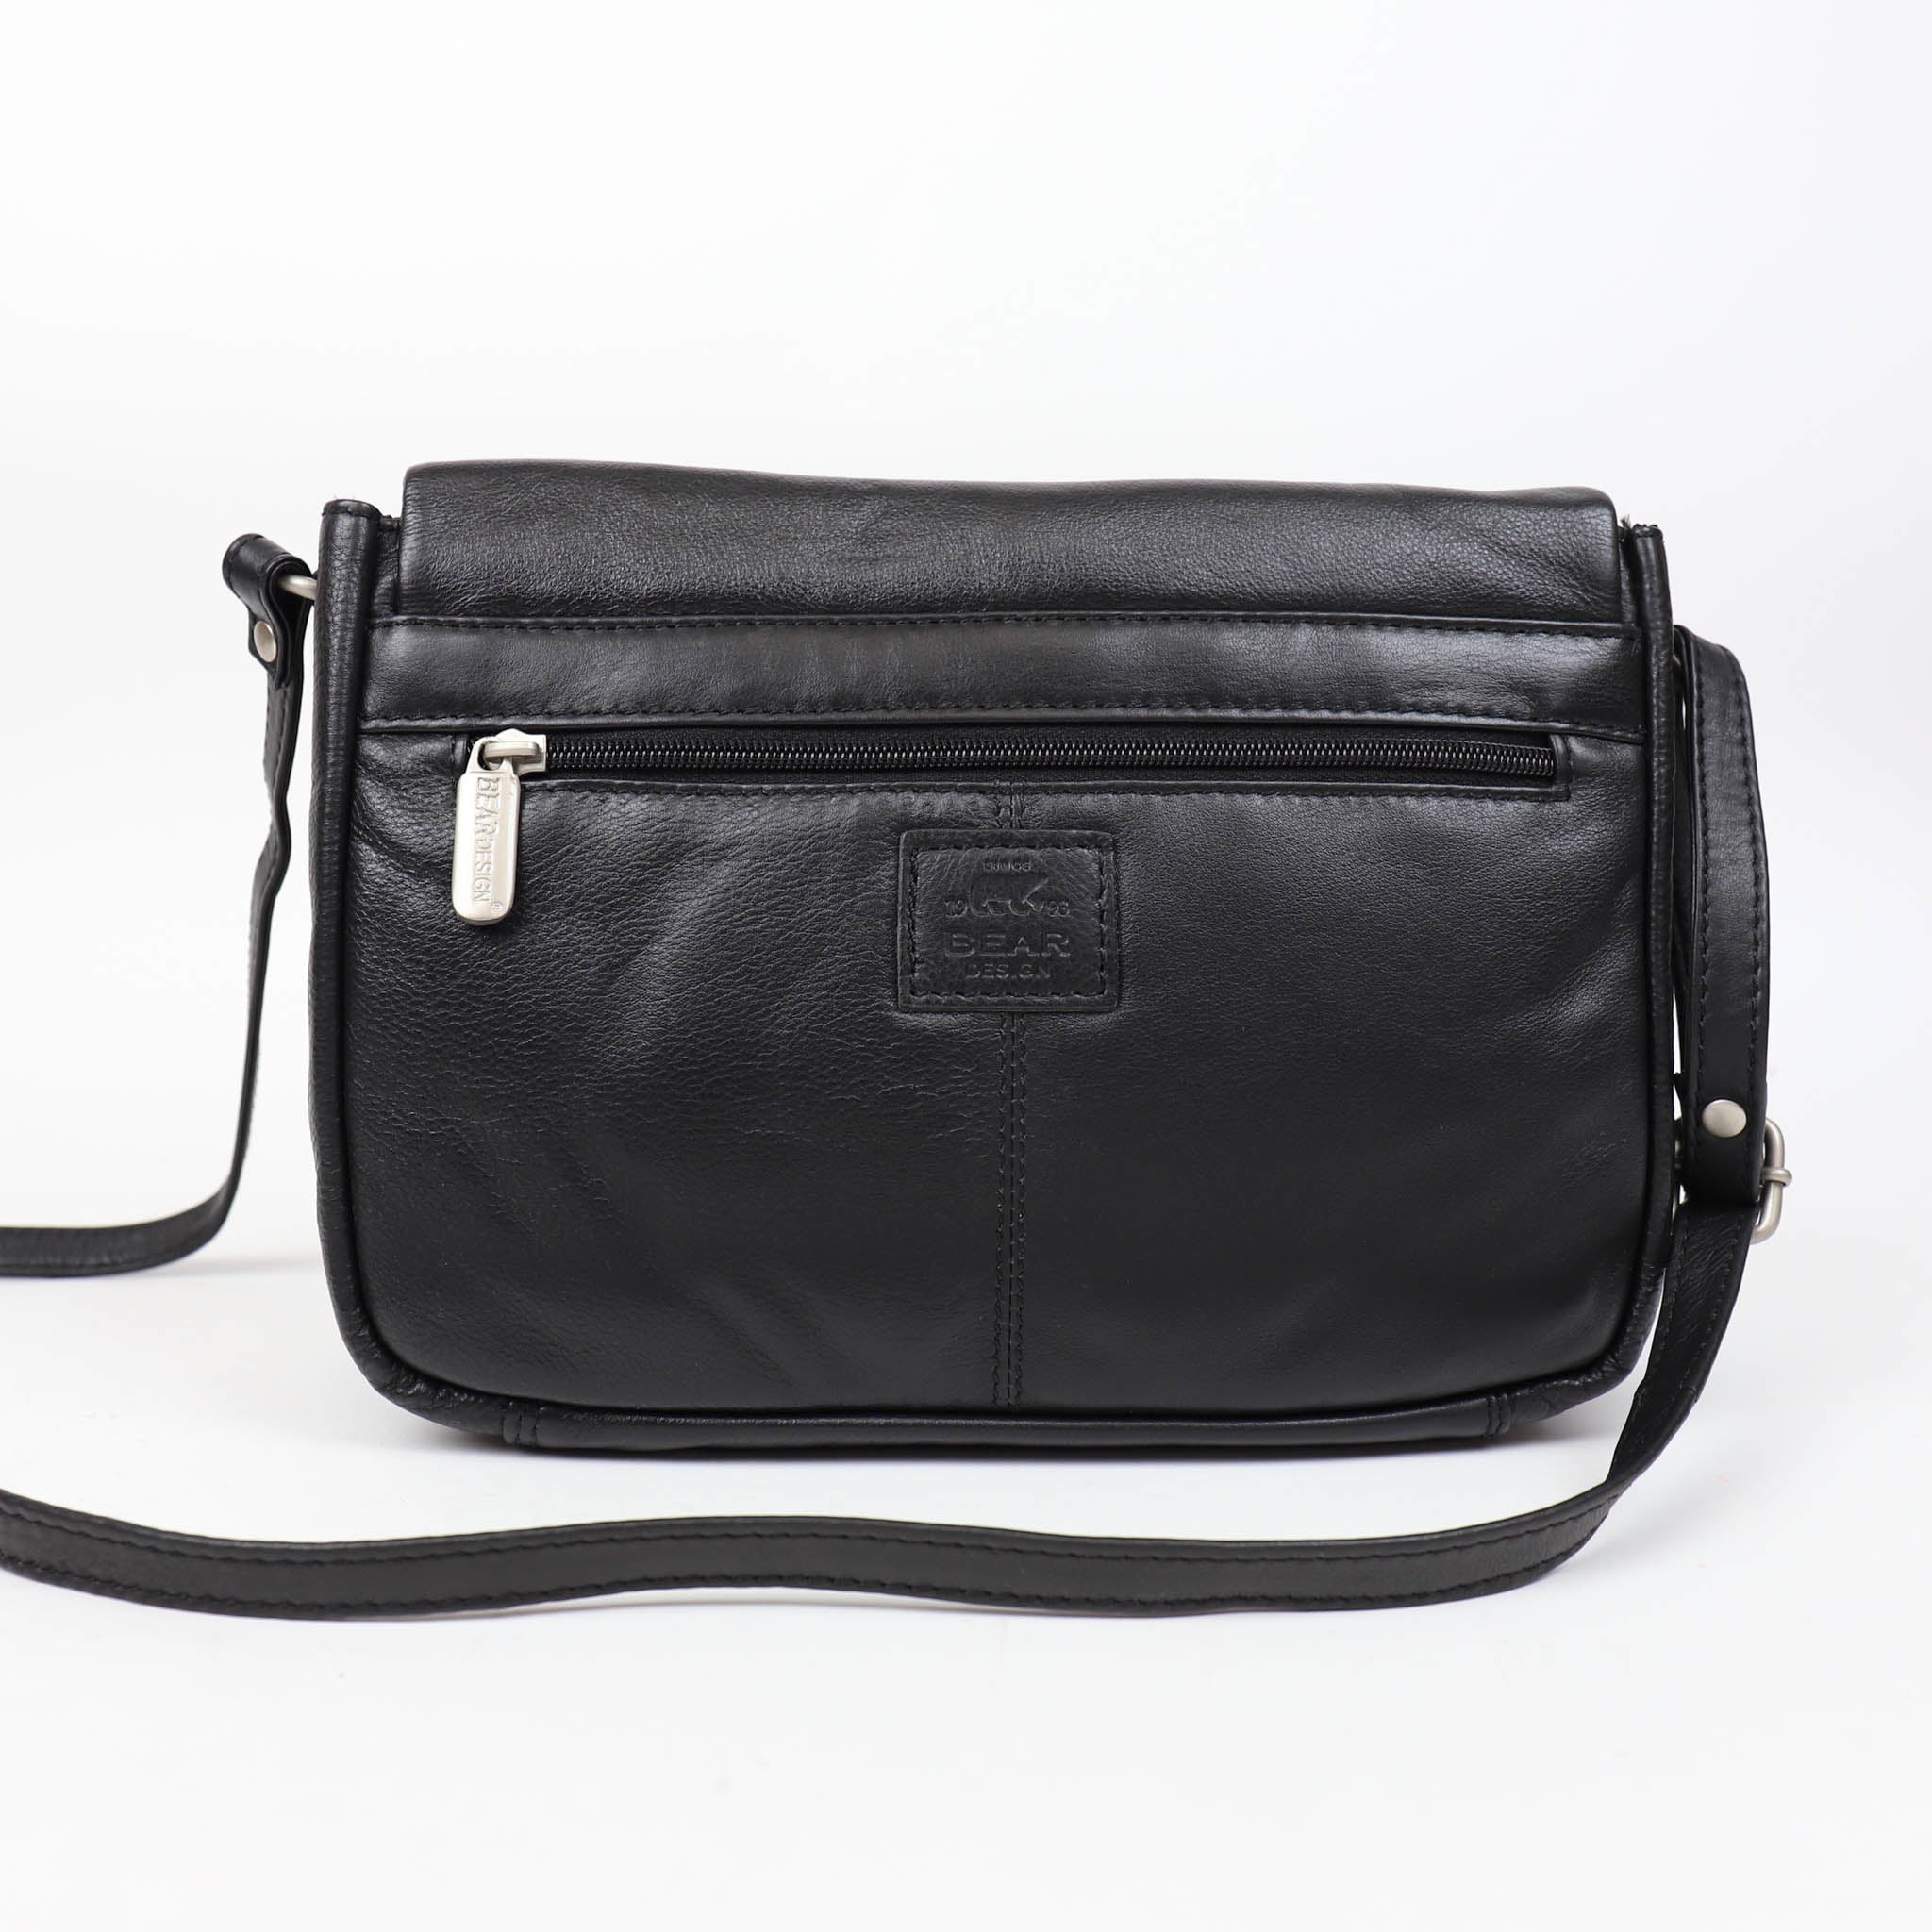 Shoulder bag 'Janine' black - B 6338